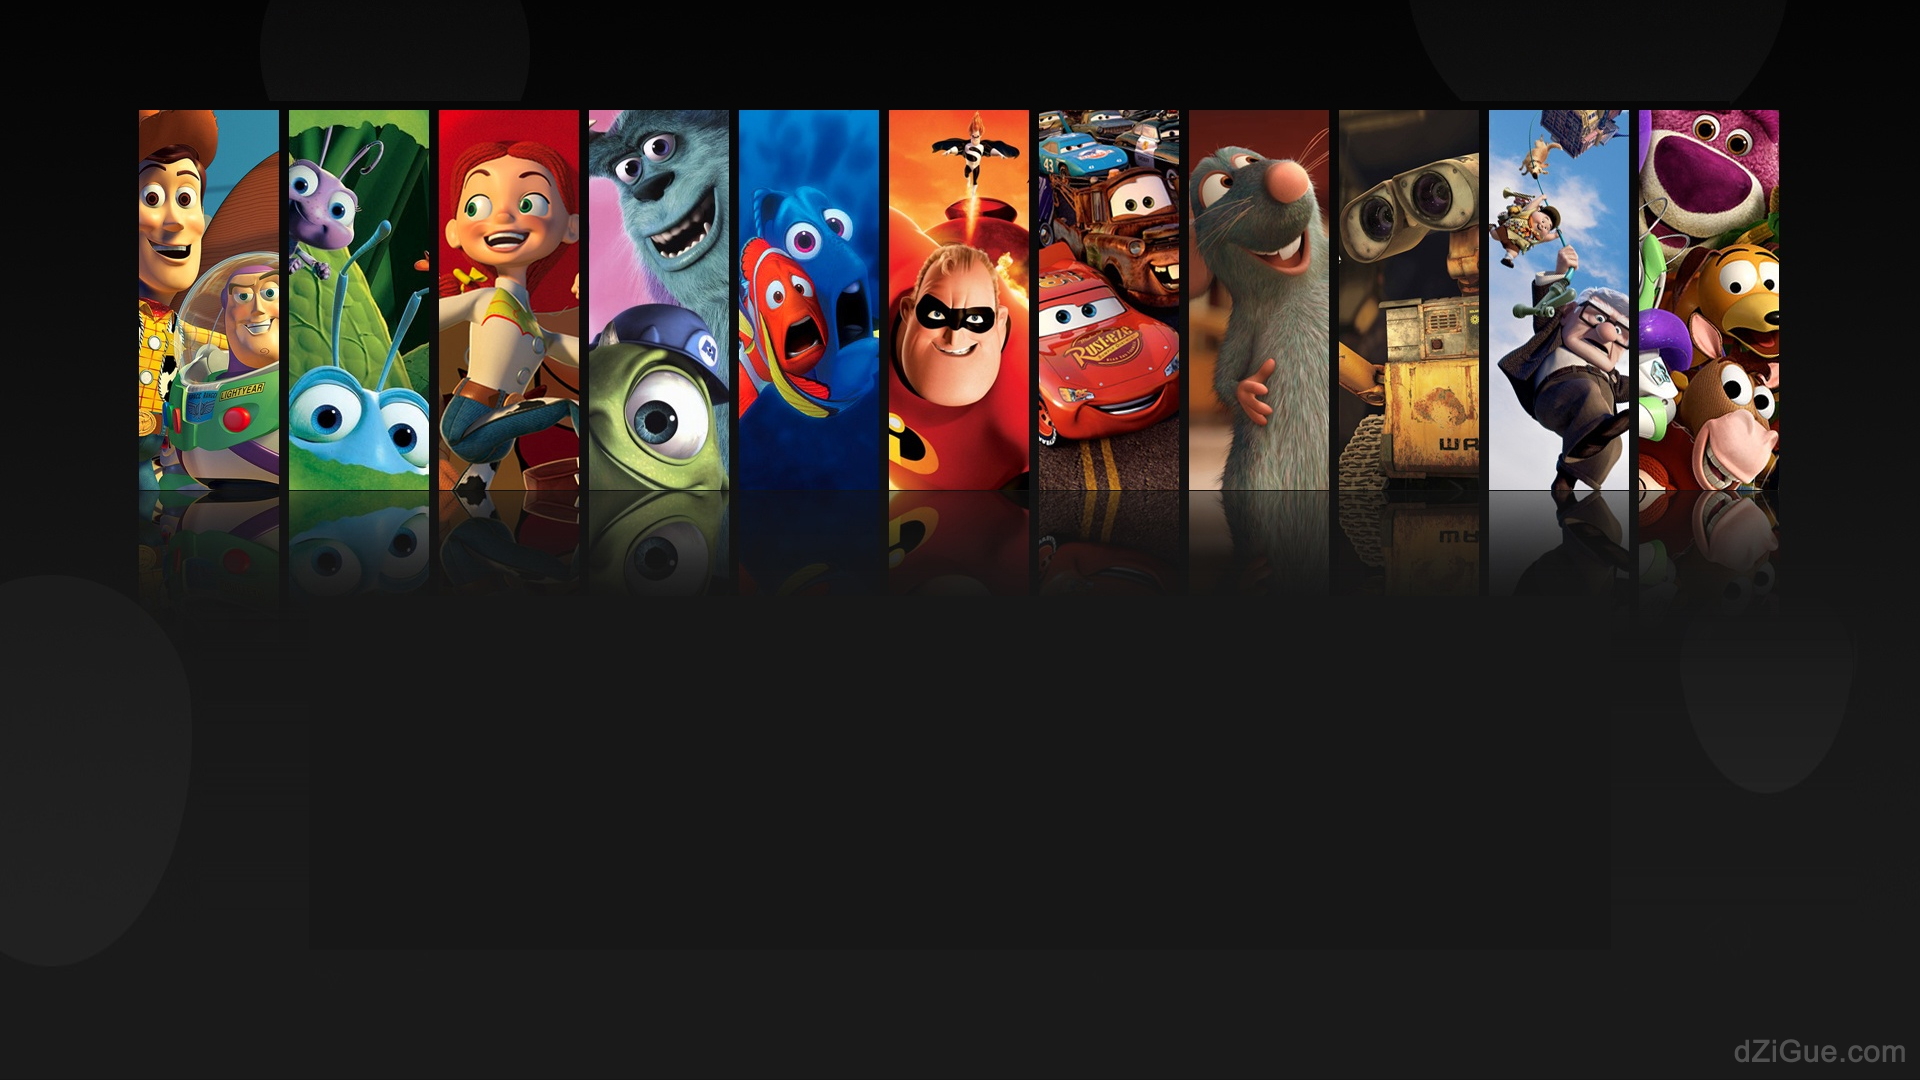 Dessins animés Pixar en fond d'écran Freebox